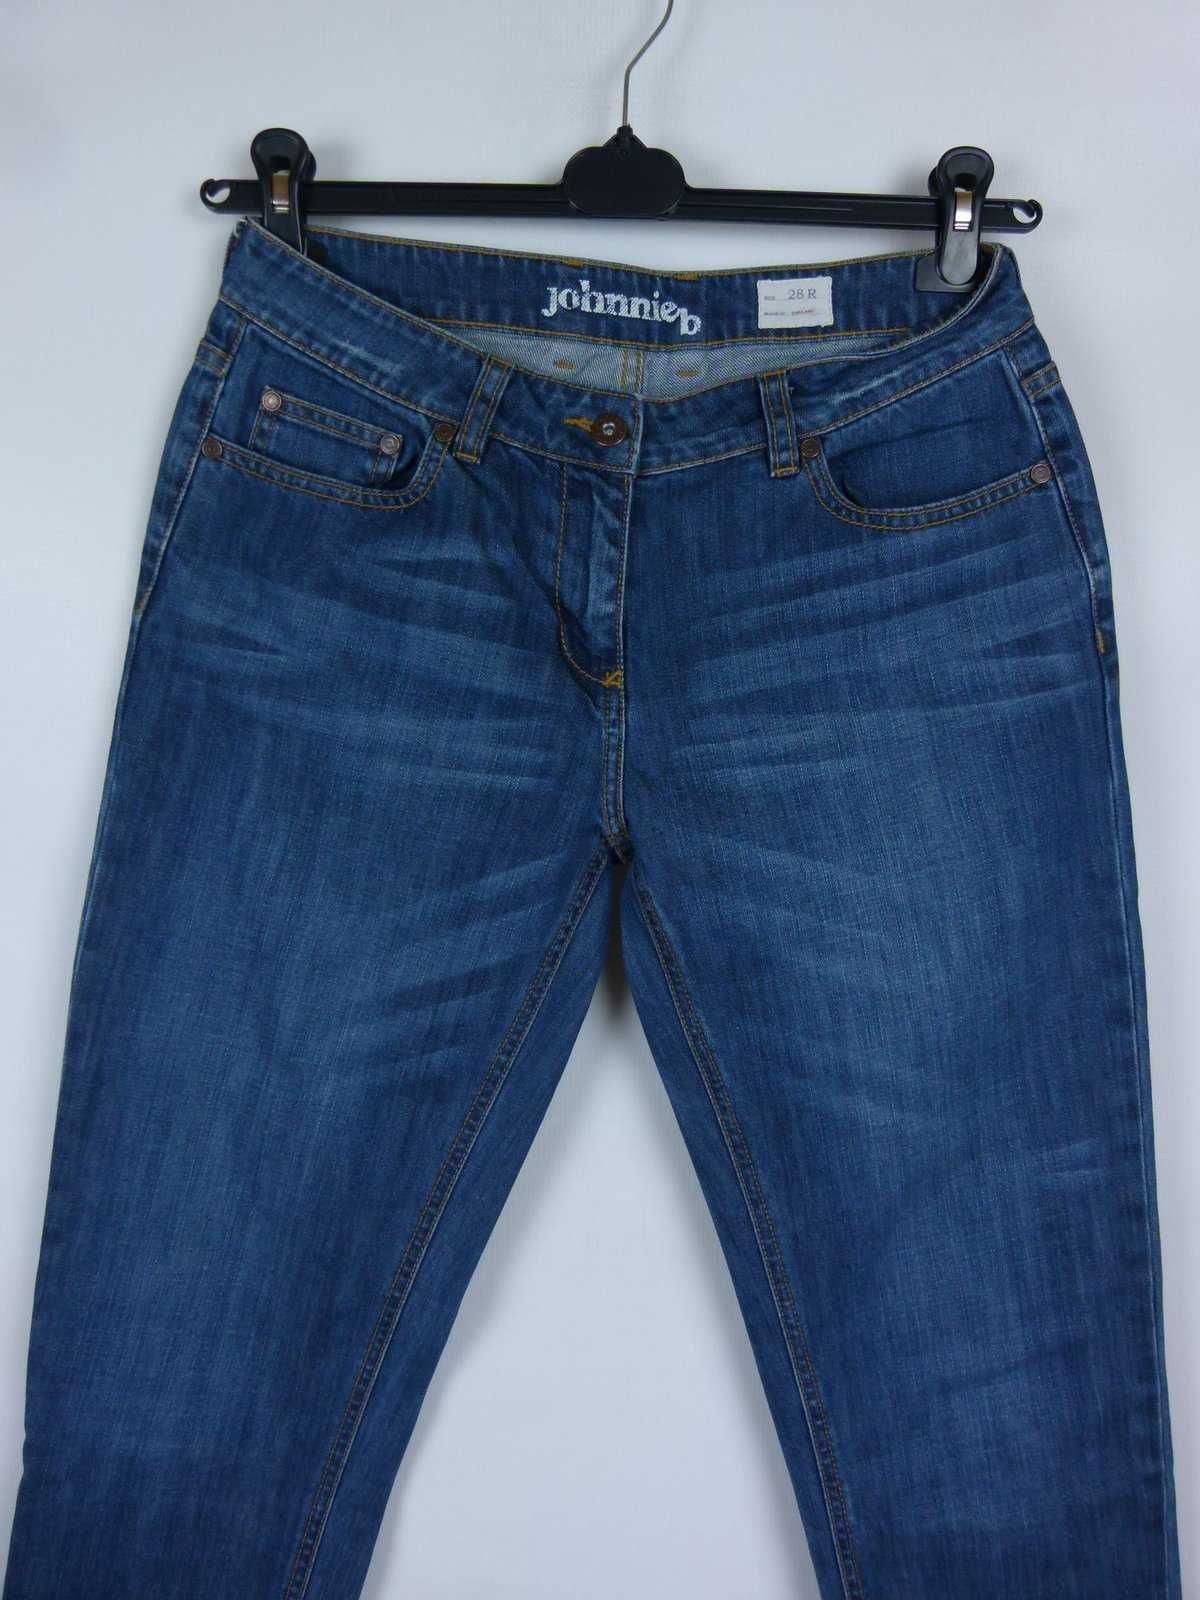 Johnnie B spodnie skinny jeans / 28R